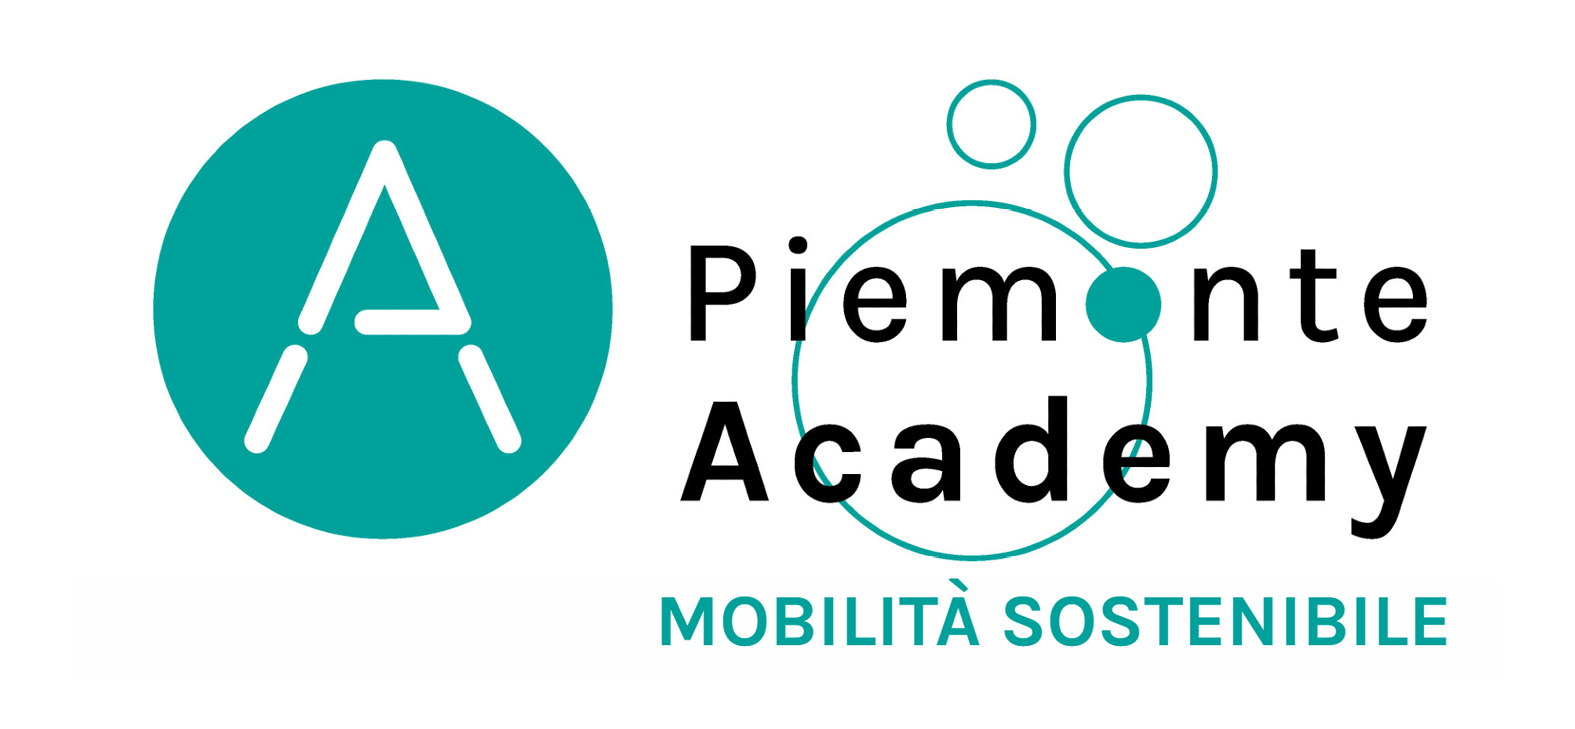 progetti academy mobilita